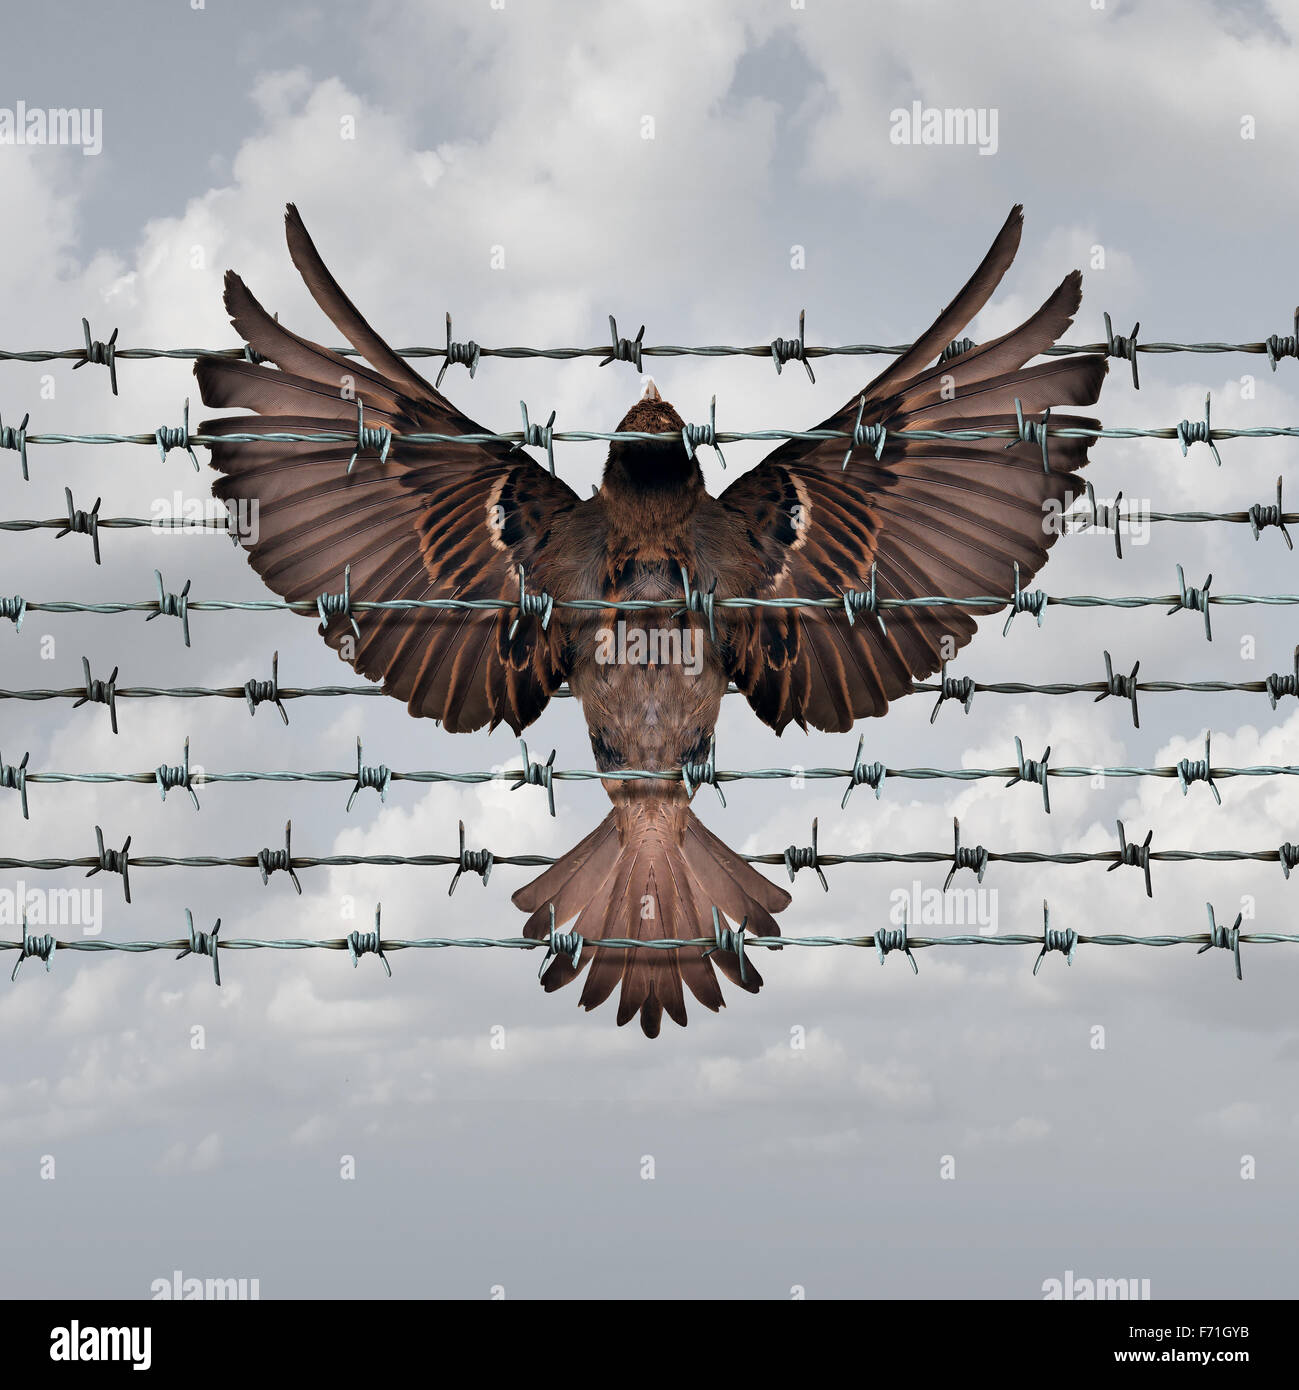 La restriction de liberté et contrainte concept occasion symbole comme un oiseau capturé et pris dans une clôture de barbelés sous la forme d'une icône à la frustration et à la répression. Banque D'Images